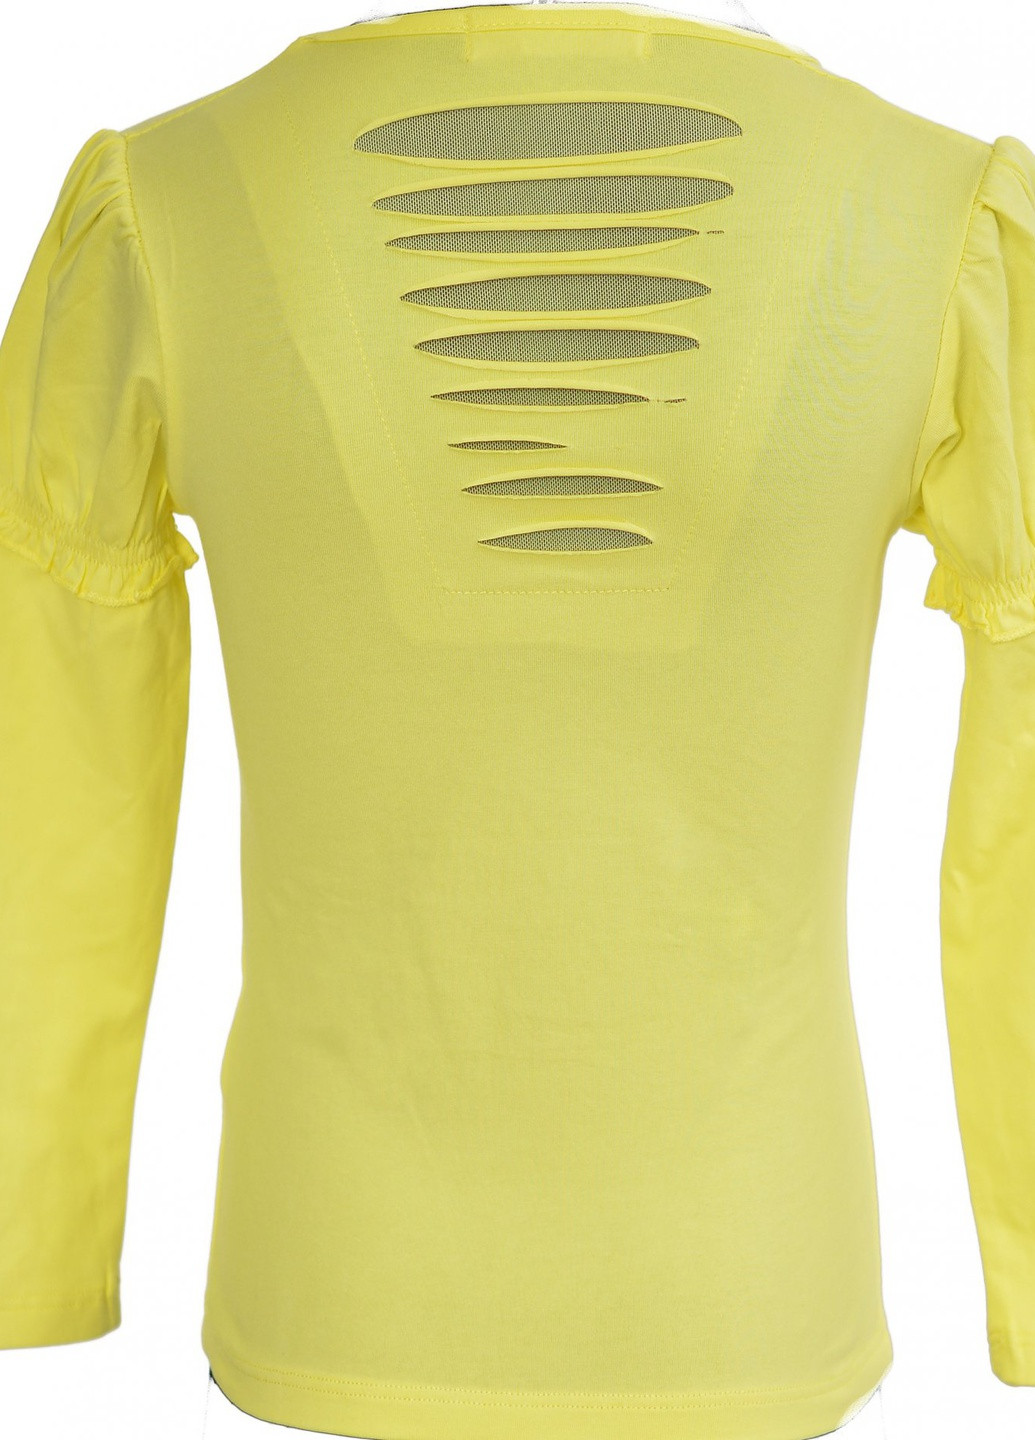 Желтая футболки батник дівчинка (003)11926-736 Lemanta